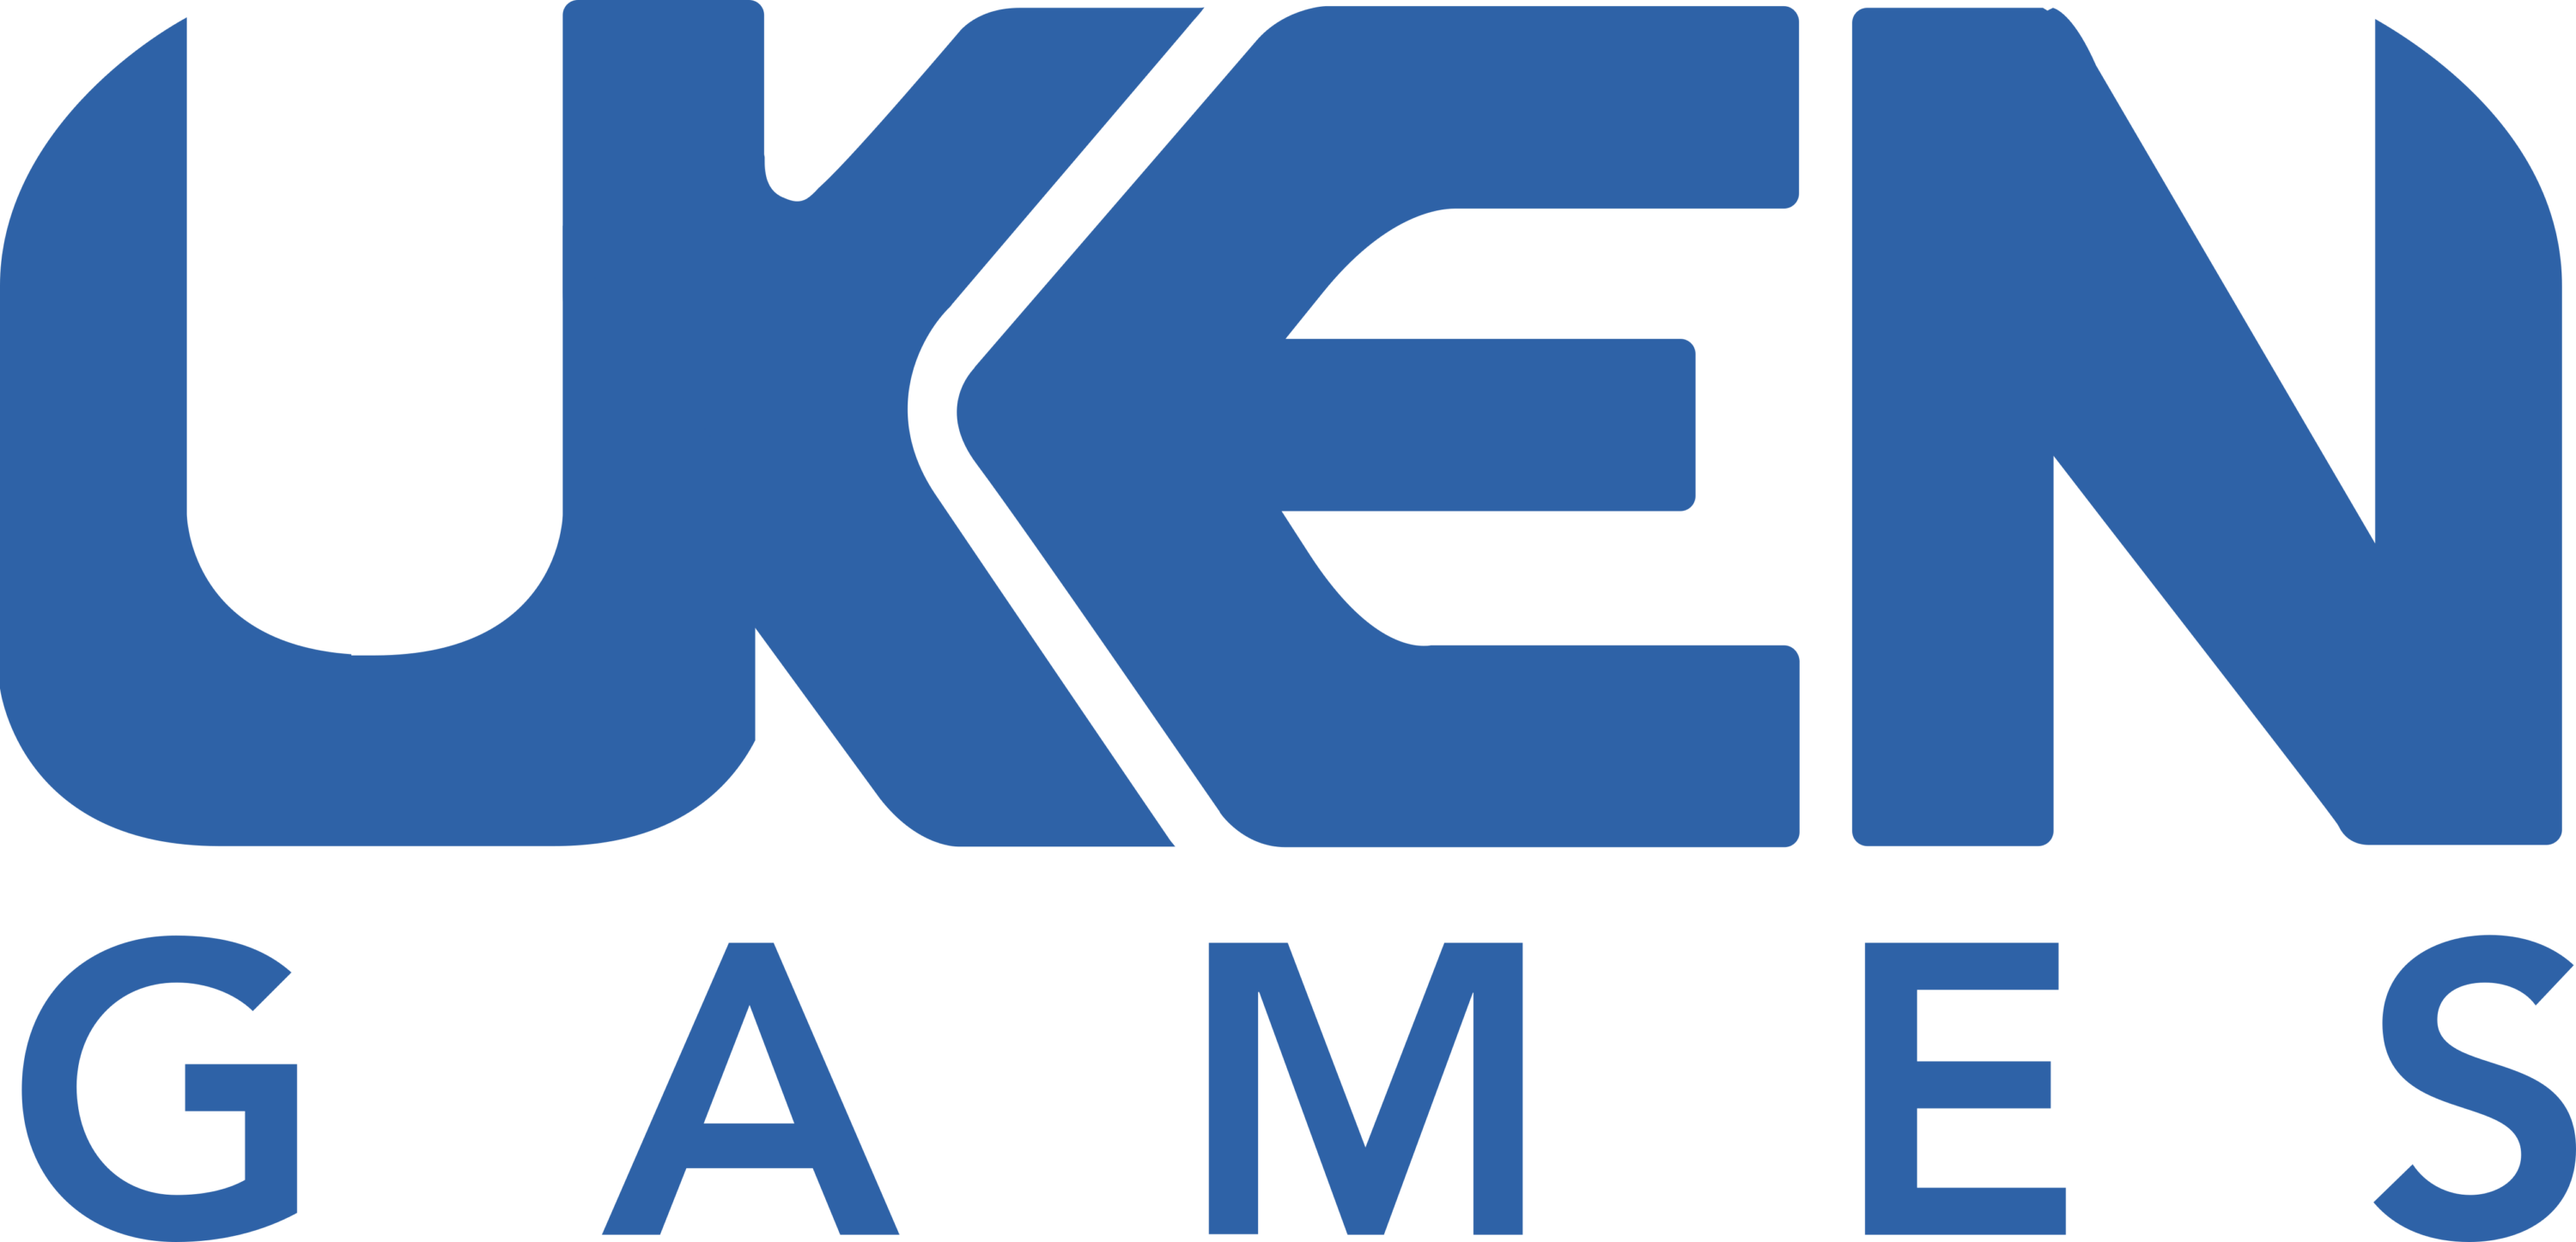 UKEN Games Logo